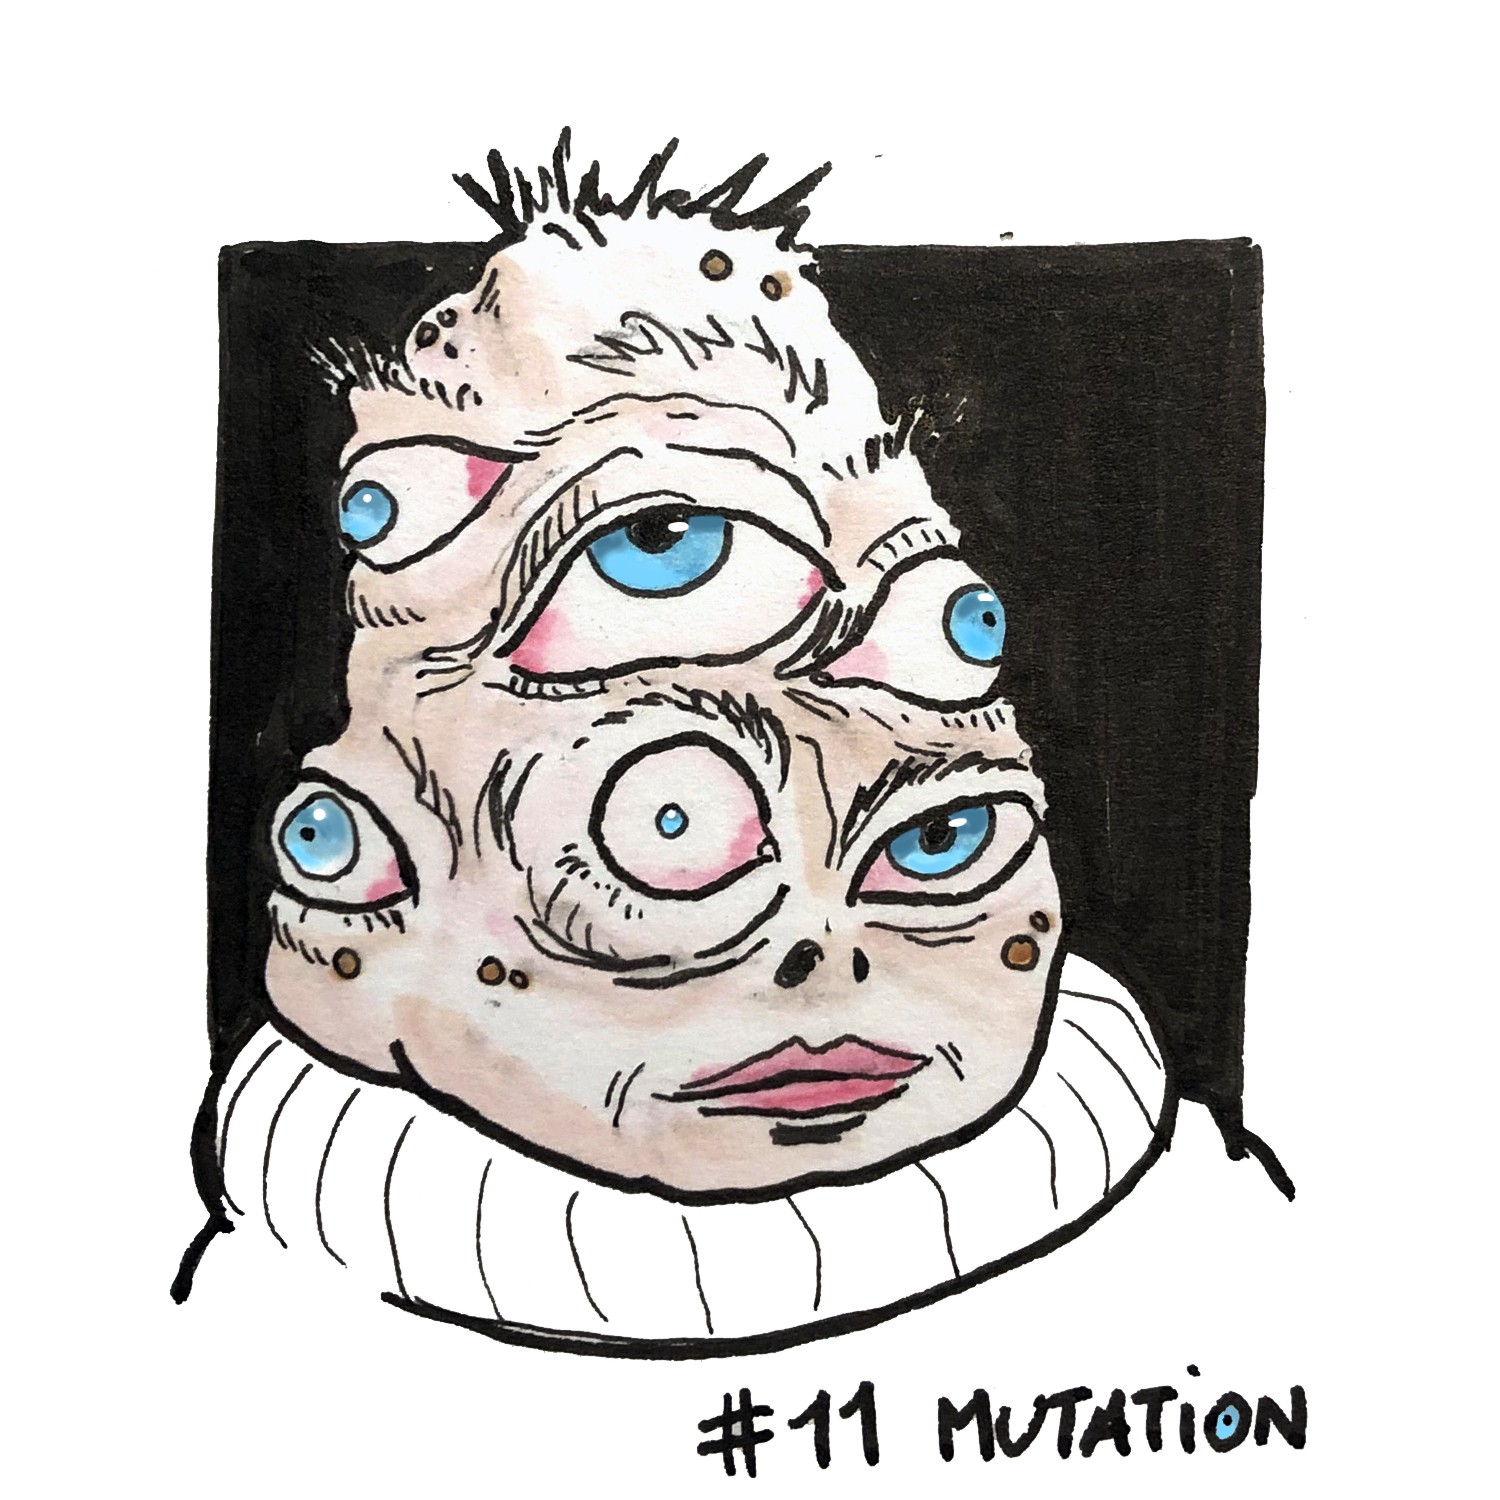 11- "Mutation" INKTOBER 2021 - Liste Adrinktober par Max ReivillO